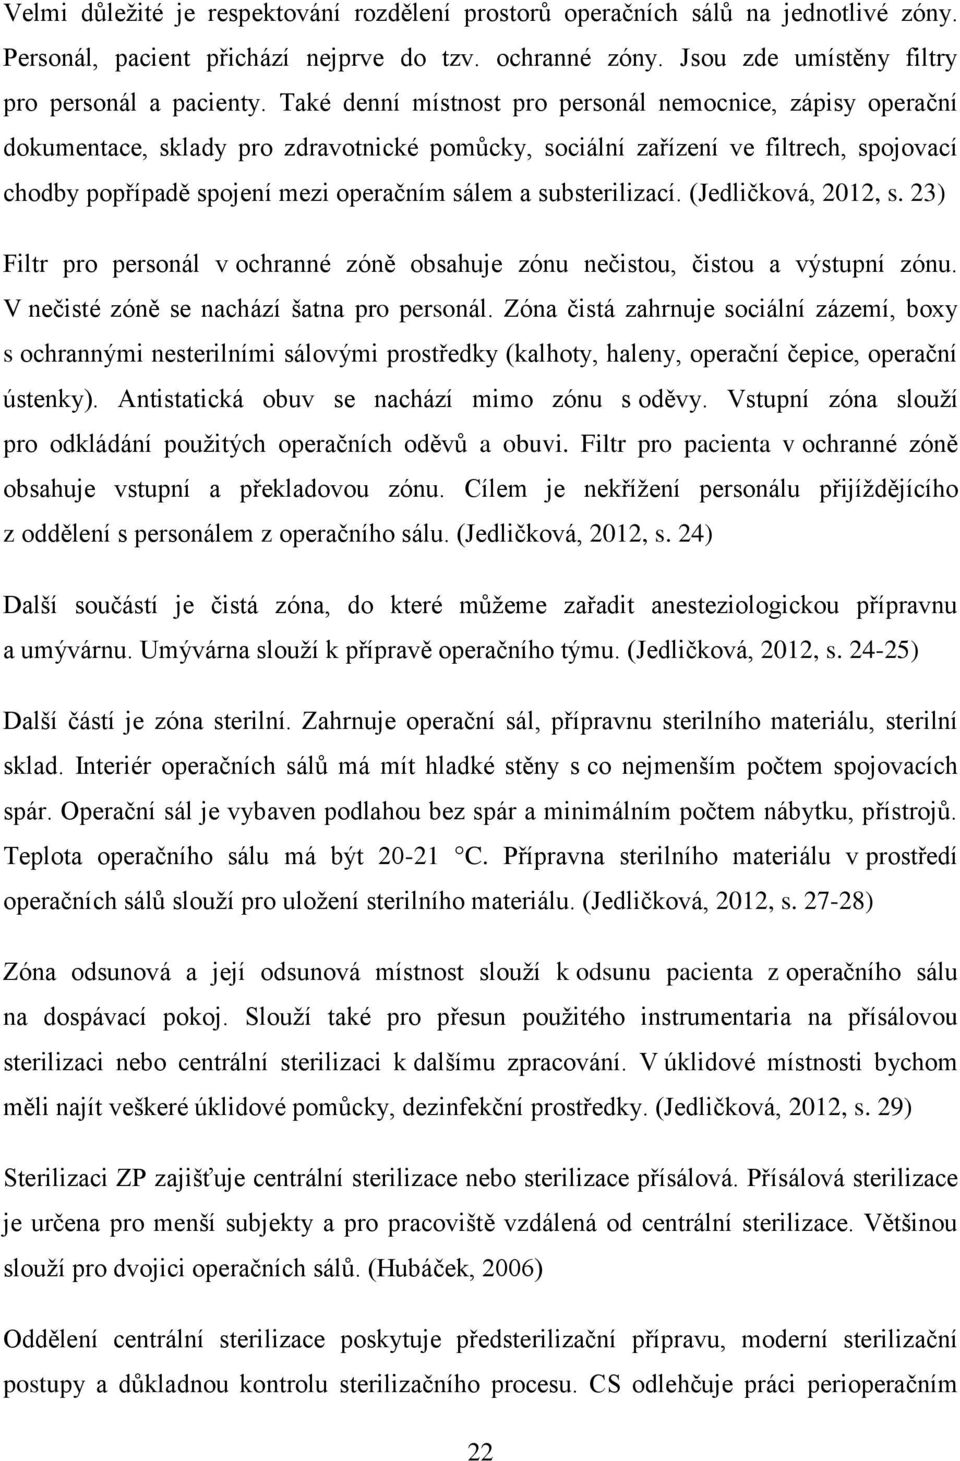 substerilizací. (Jedličková, 2012, s. 23) Filtr pro personál v ochranné zóně obsahuje zónu nečistou, čistou a výstupní zónu. V nečisté zóně se nachází šatna pro personál.